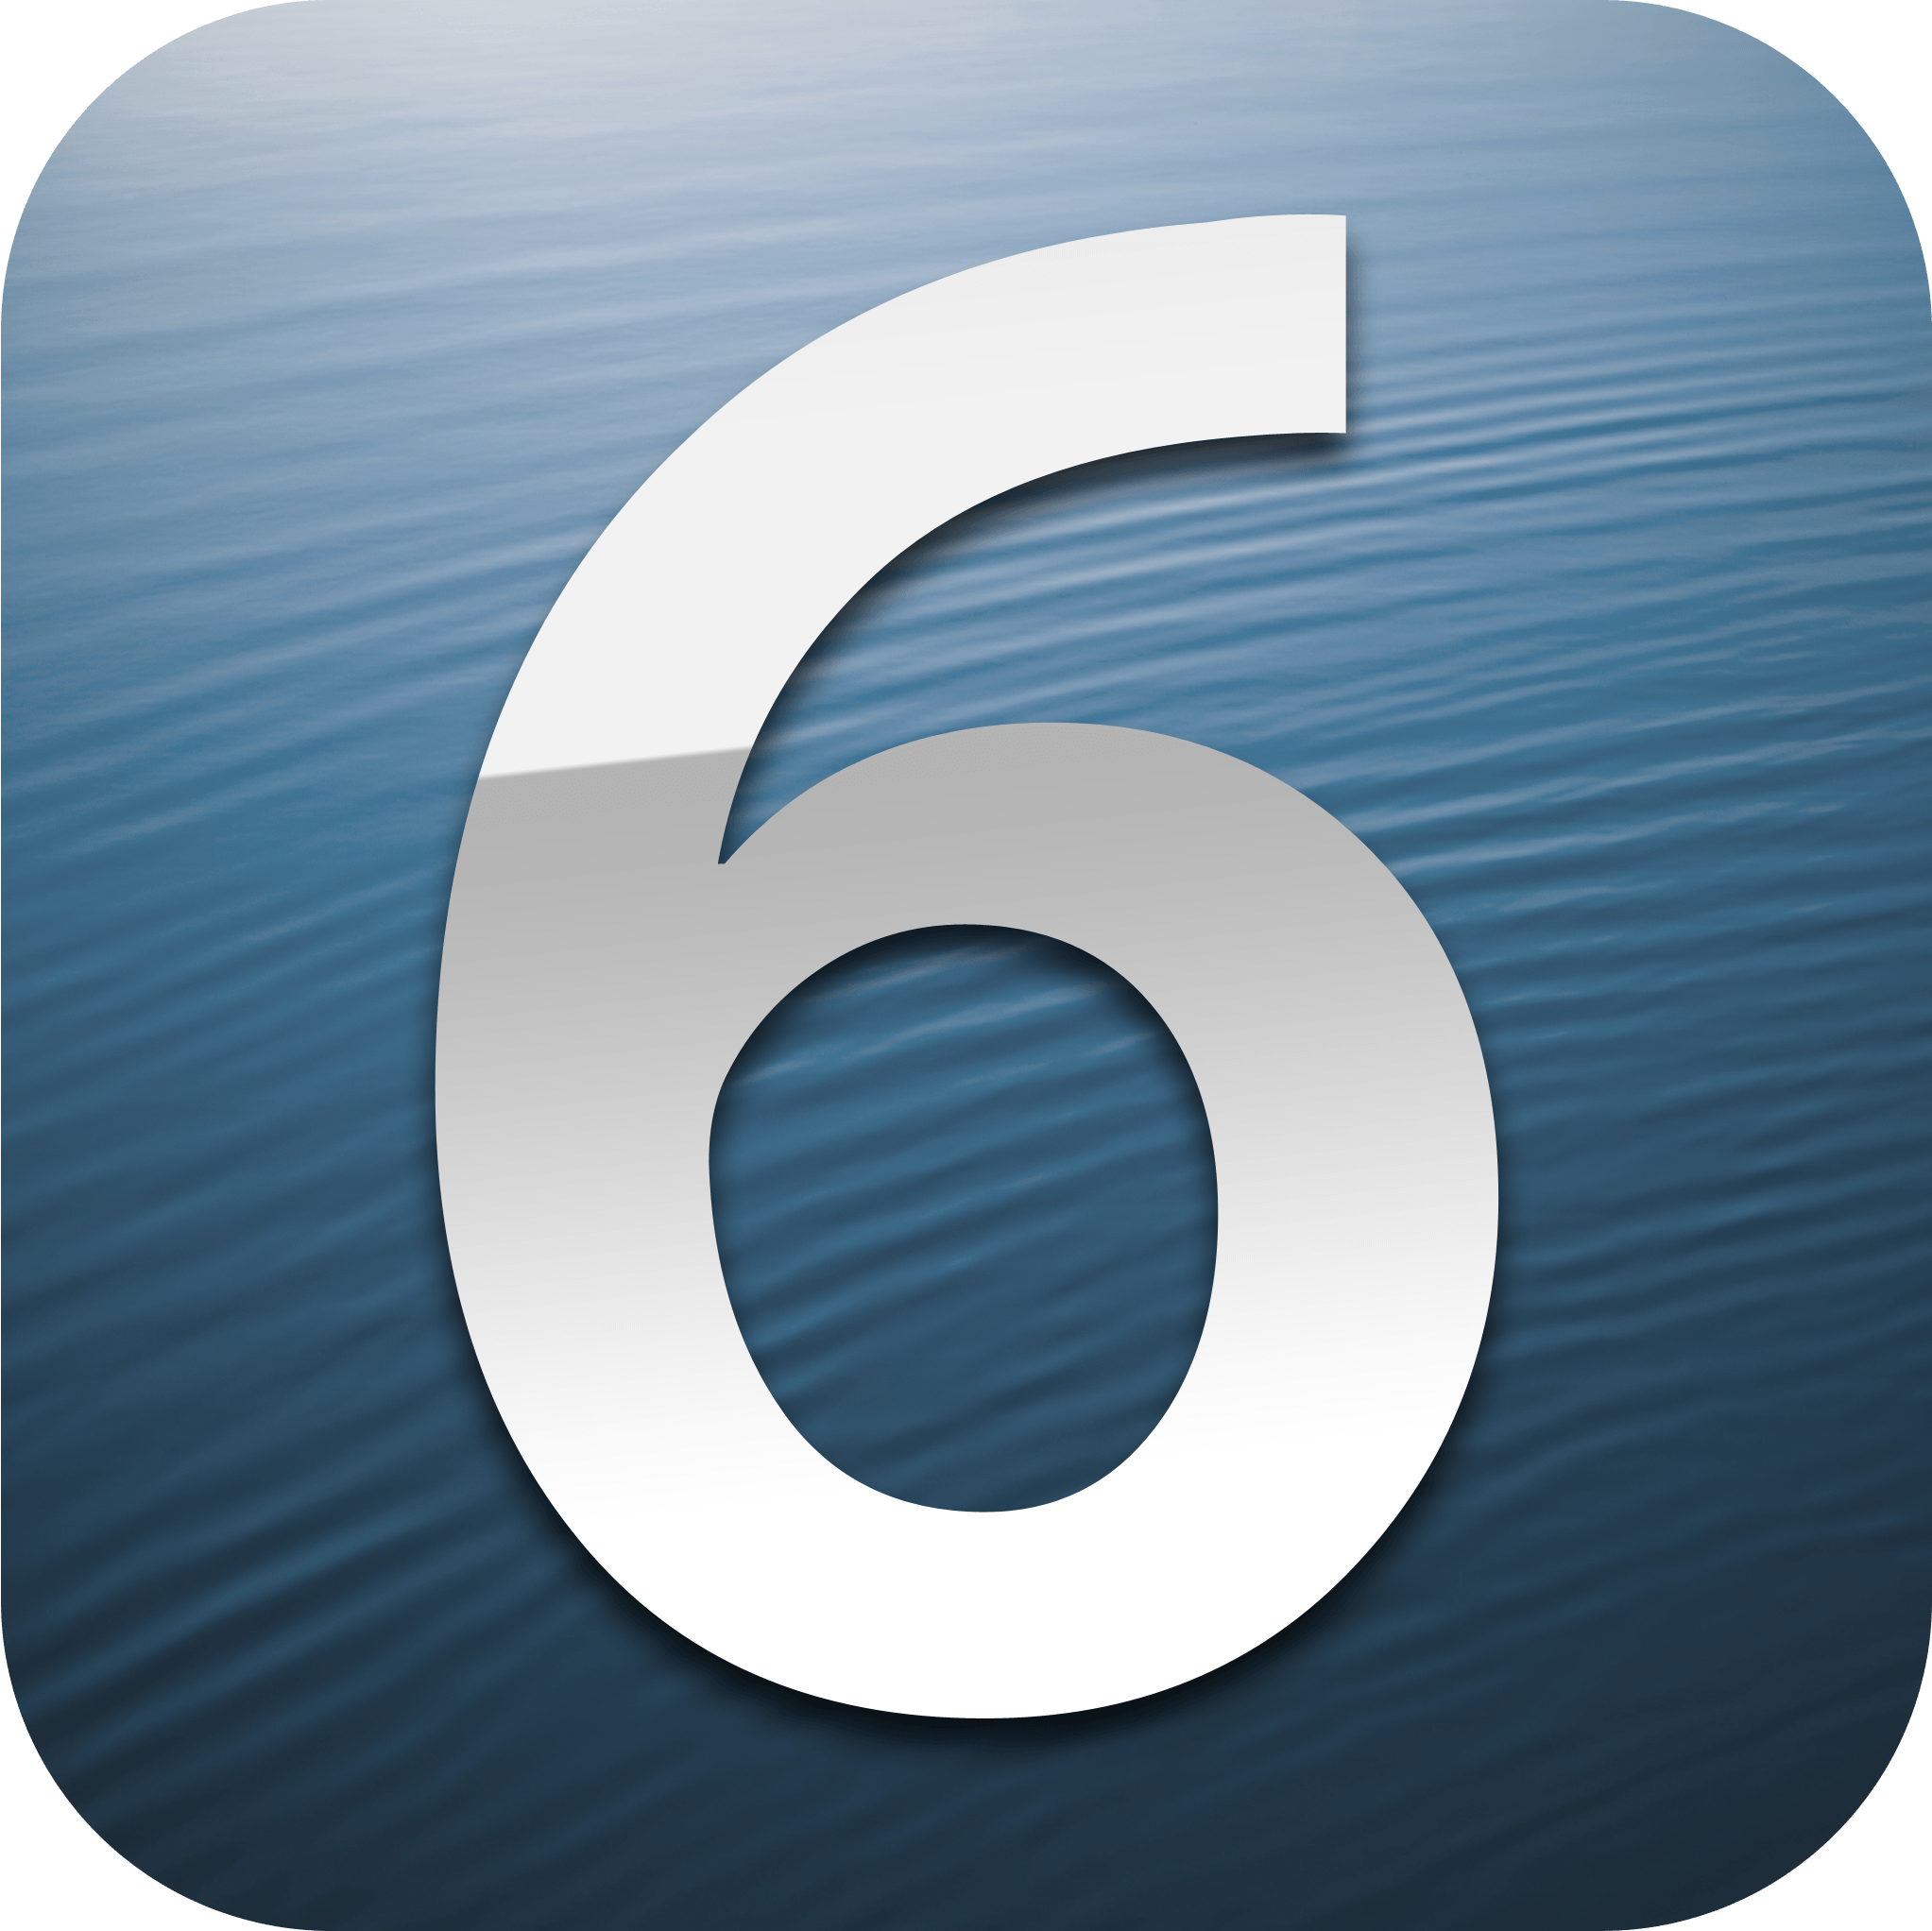 6 Logo - File:IOS 6 logo (2).png